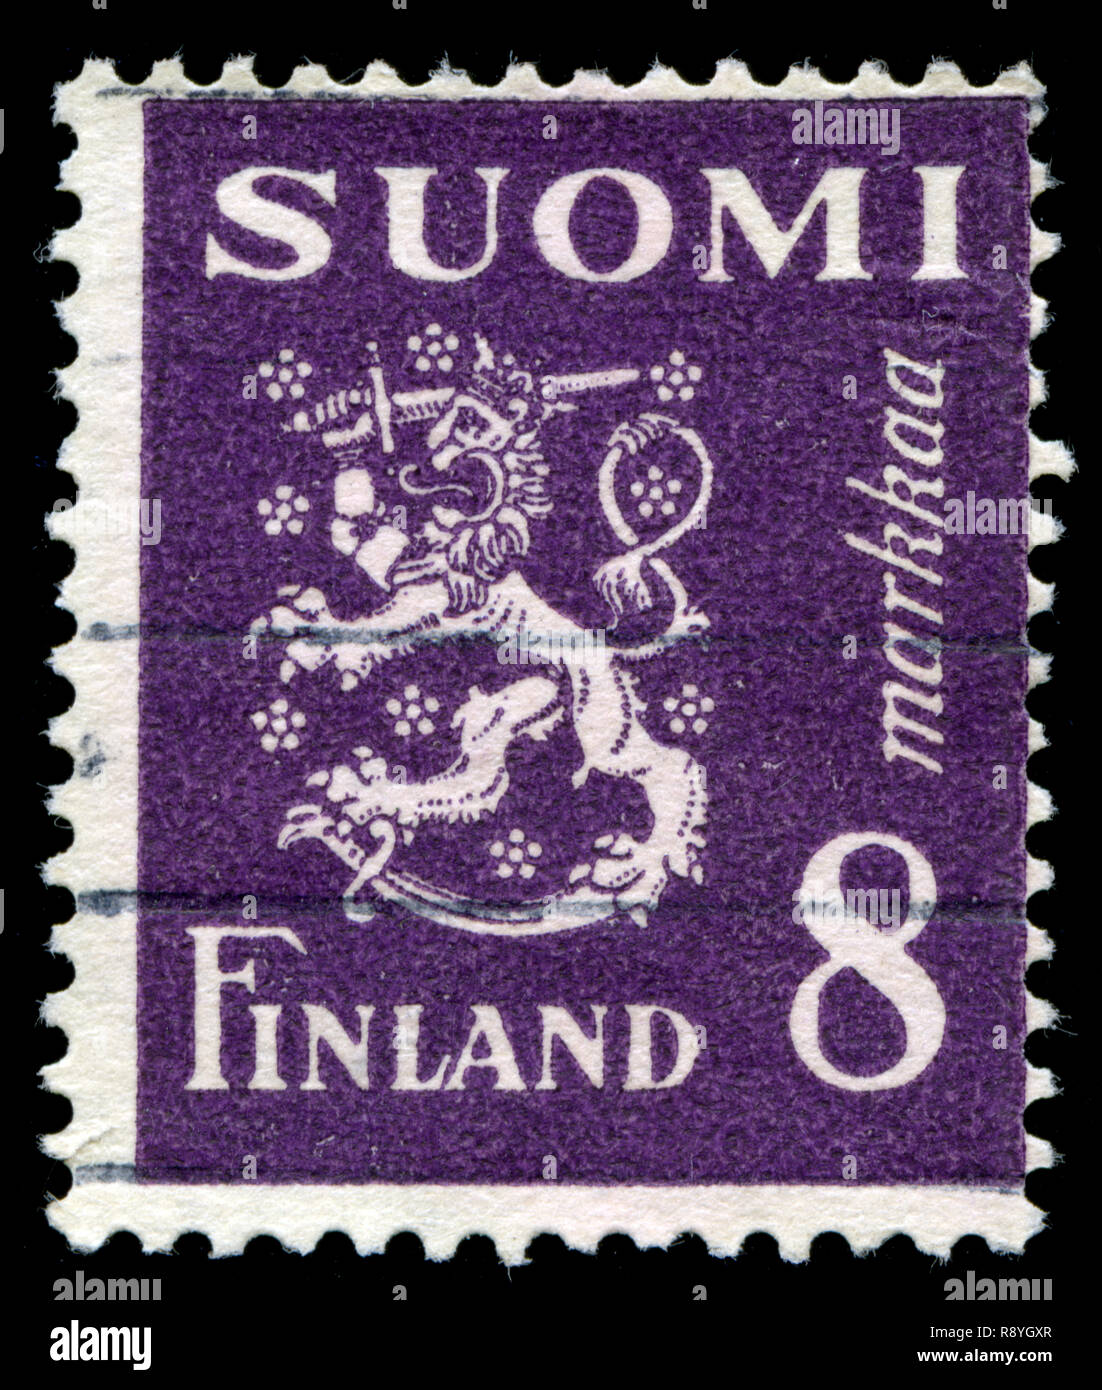 Timbre-poste de la Finlande dans le modèle 1930 Lion série émise en 1946 Banque D'Images